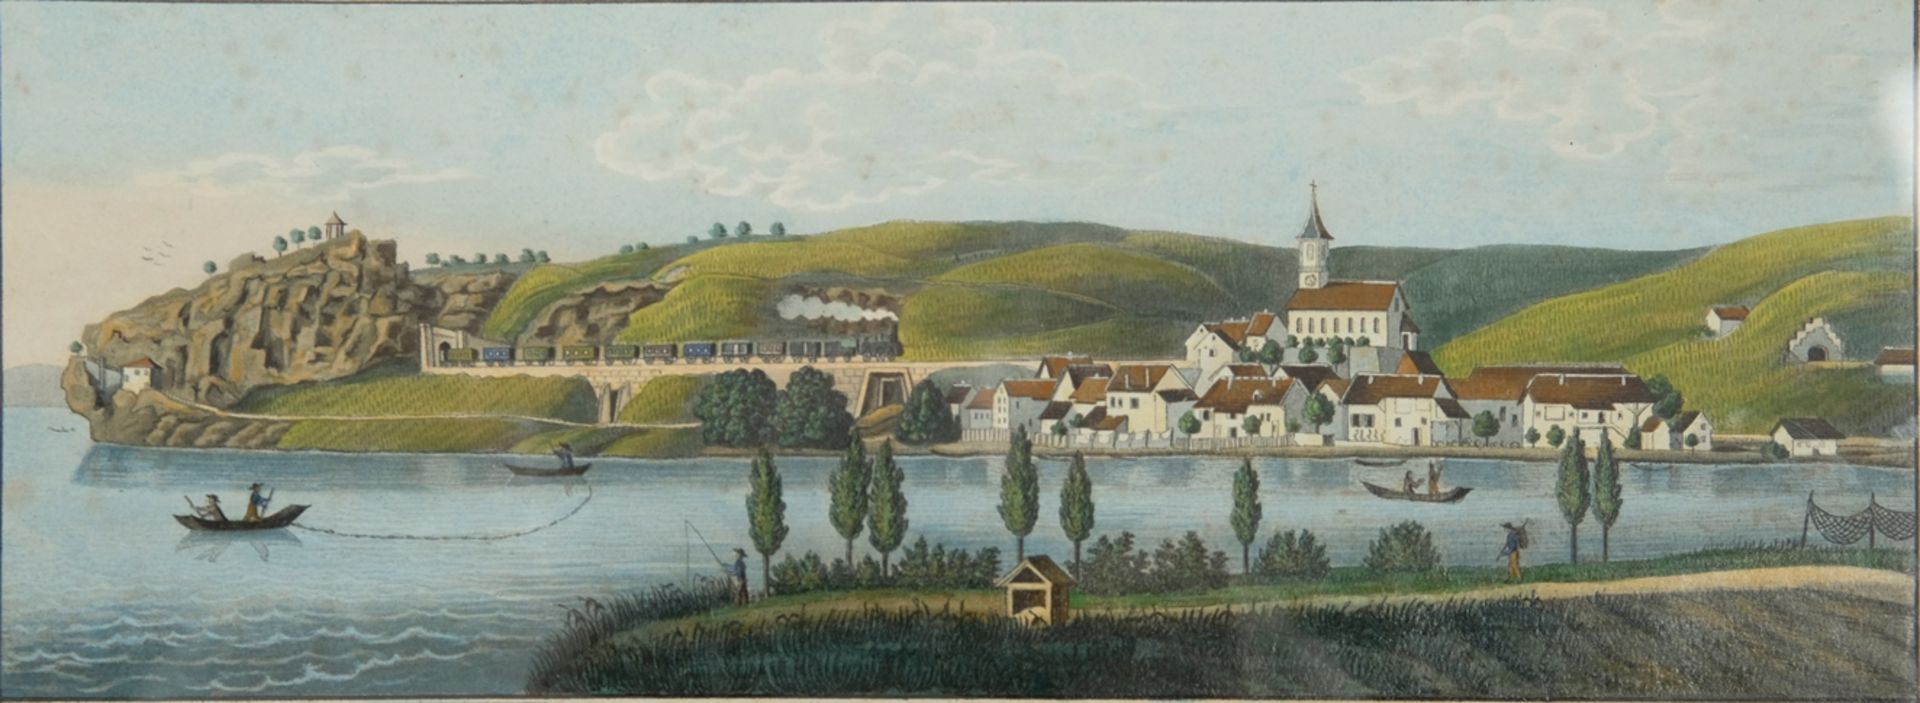 Butz, A.B. (19th century) "Panorama von Isenstein", watercolour.